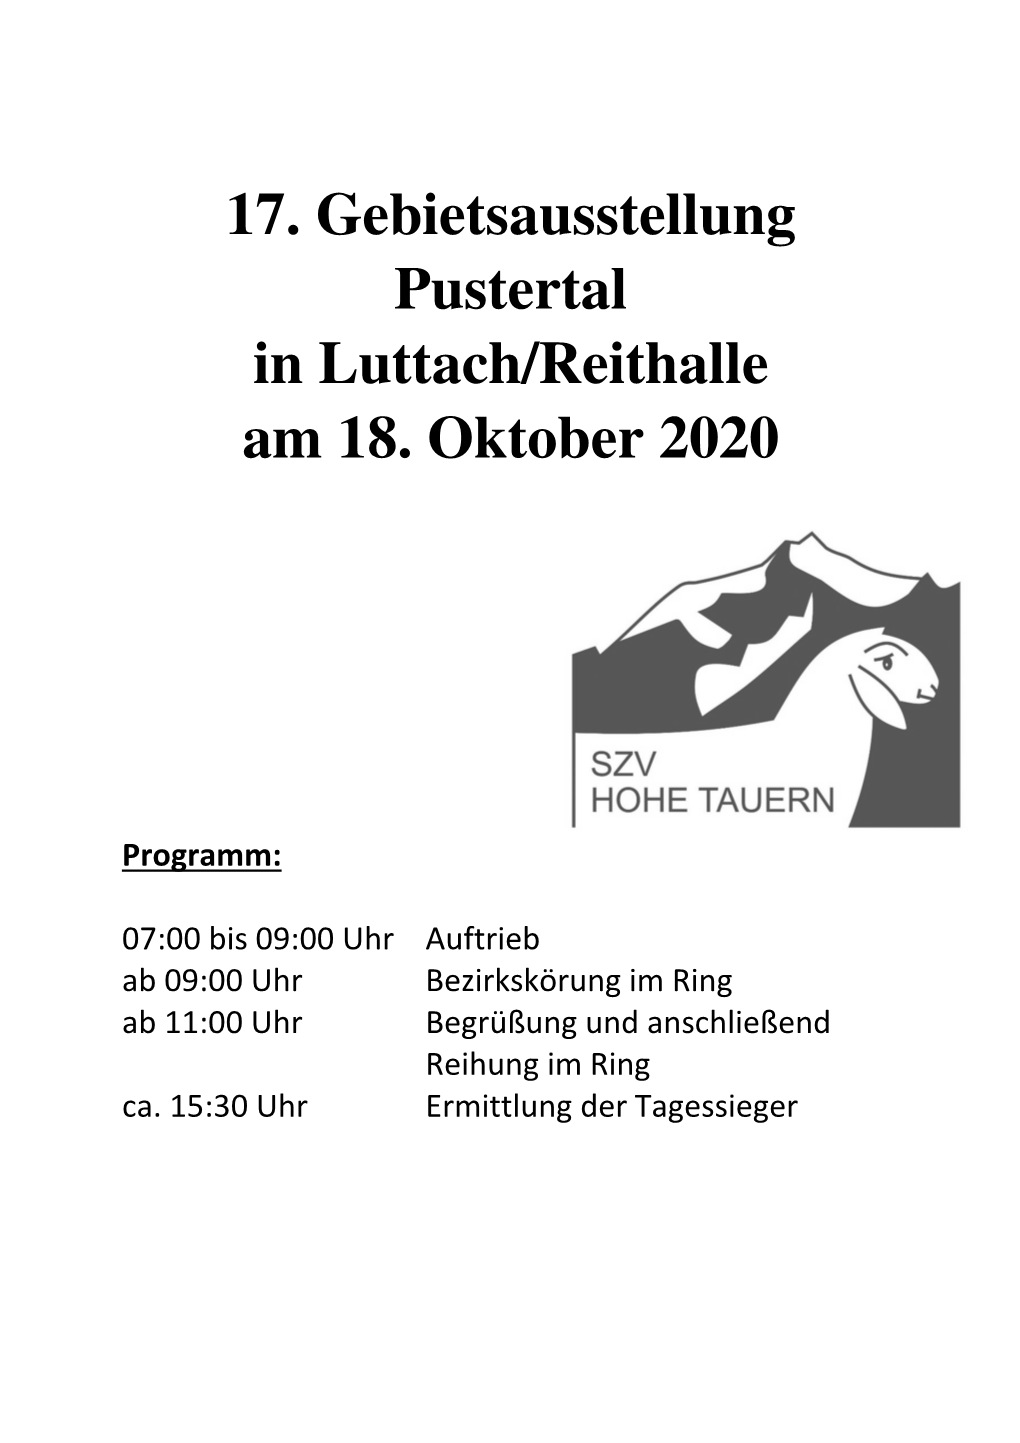 17. Gebietsausstellung Pustertal in Luttach/Reithalle Am 18. Oktober 2020